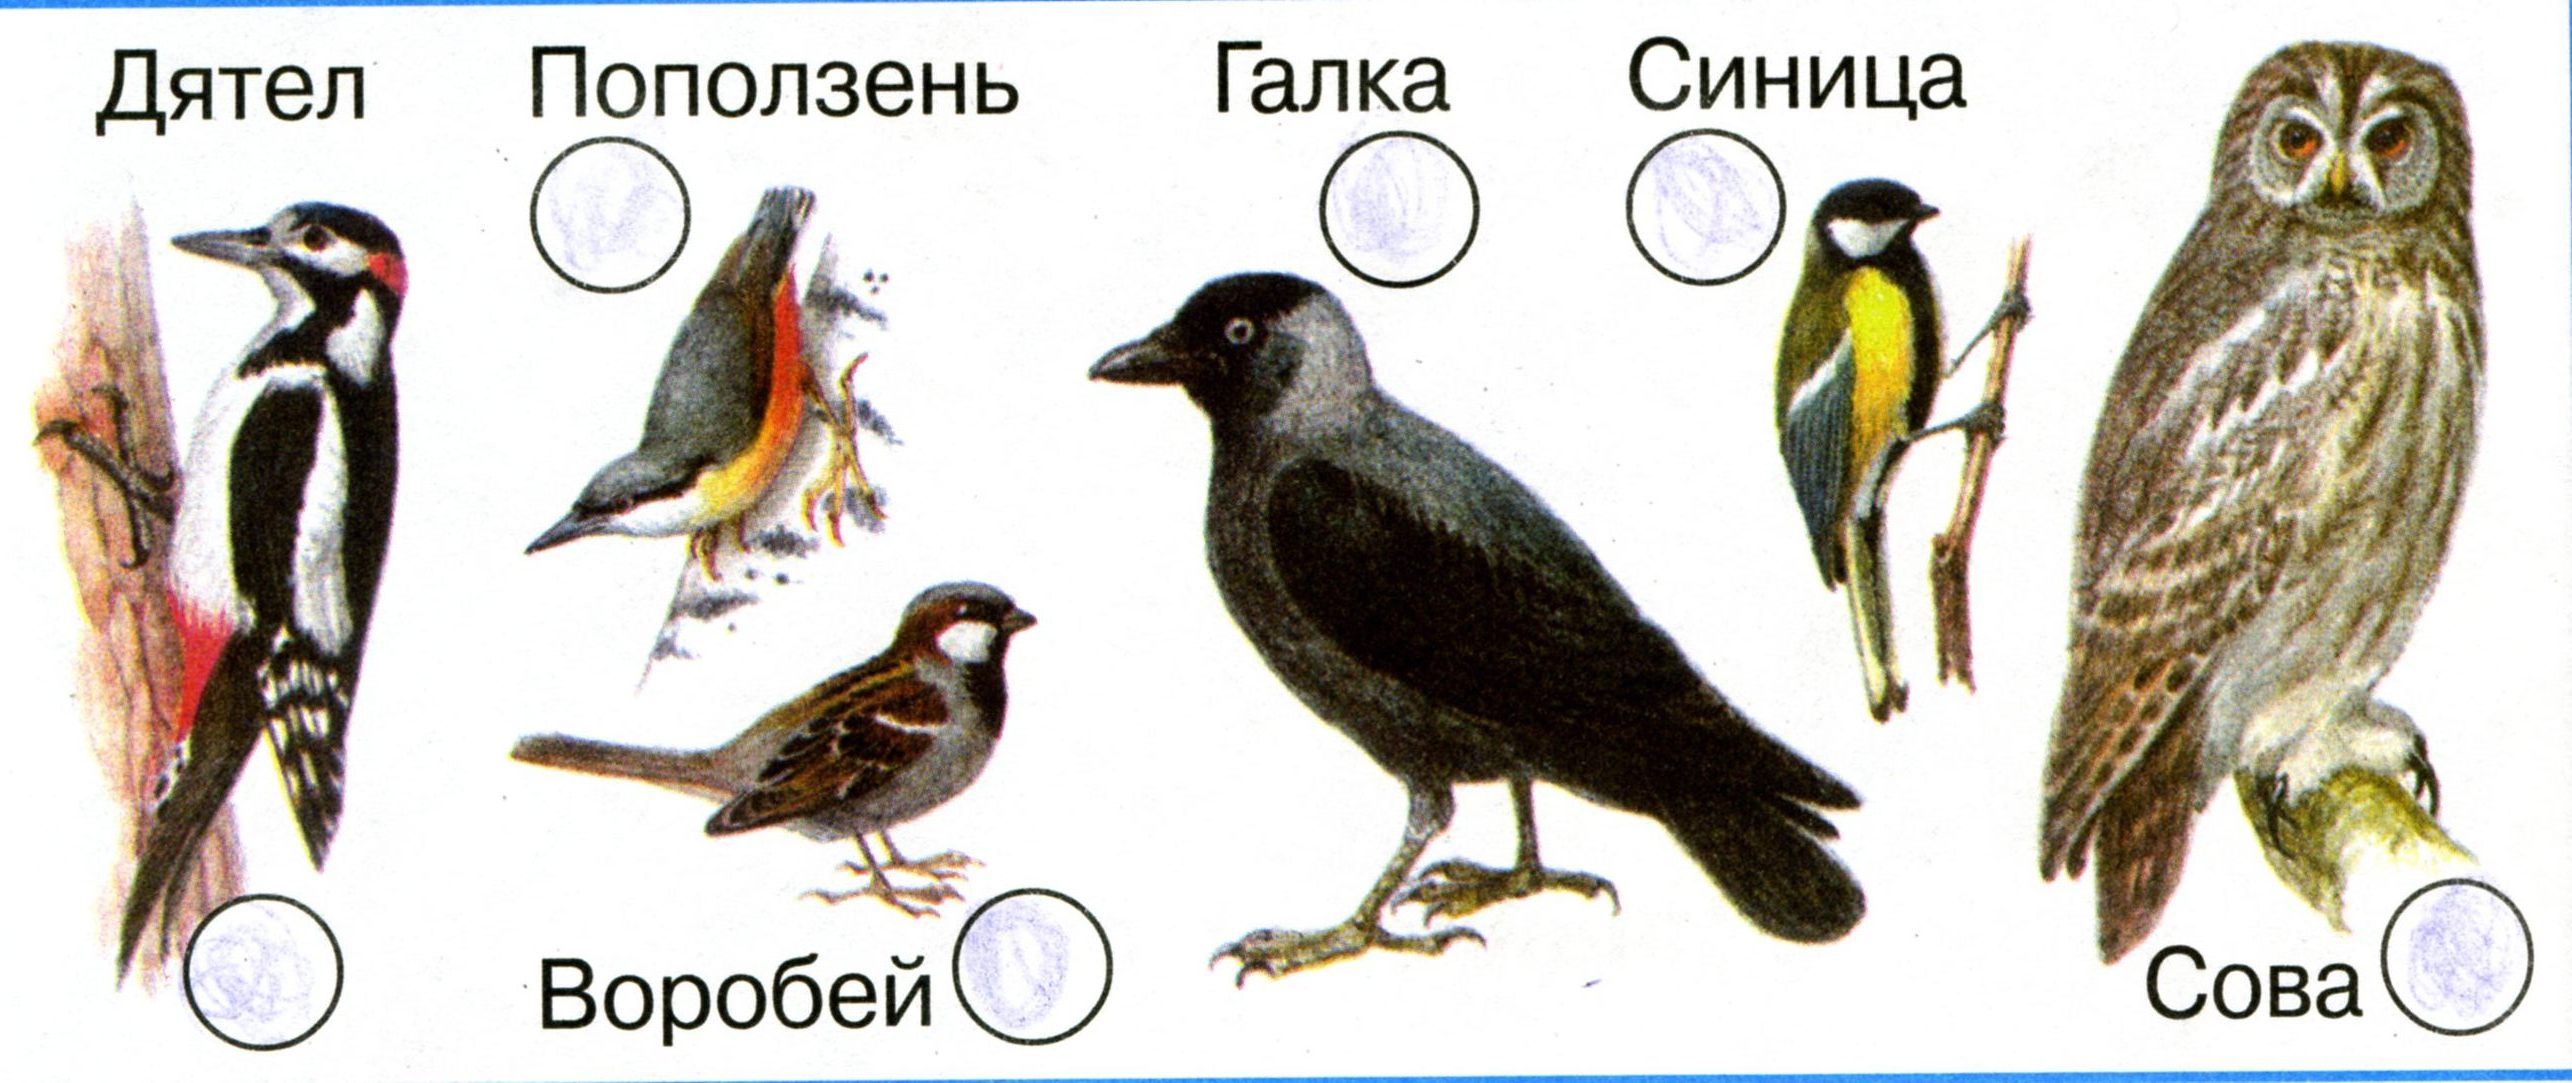 Картинки птиц с названиями для детей цветные красивые